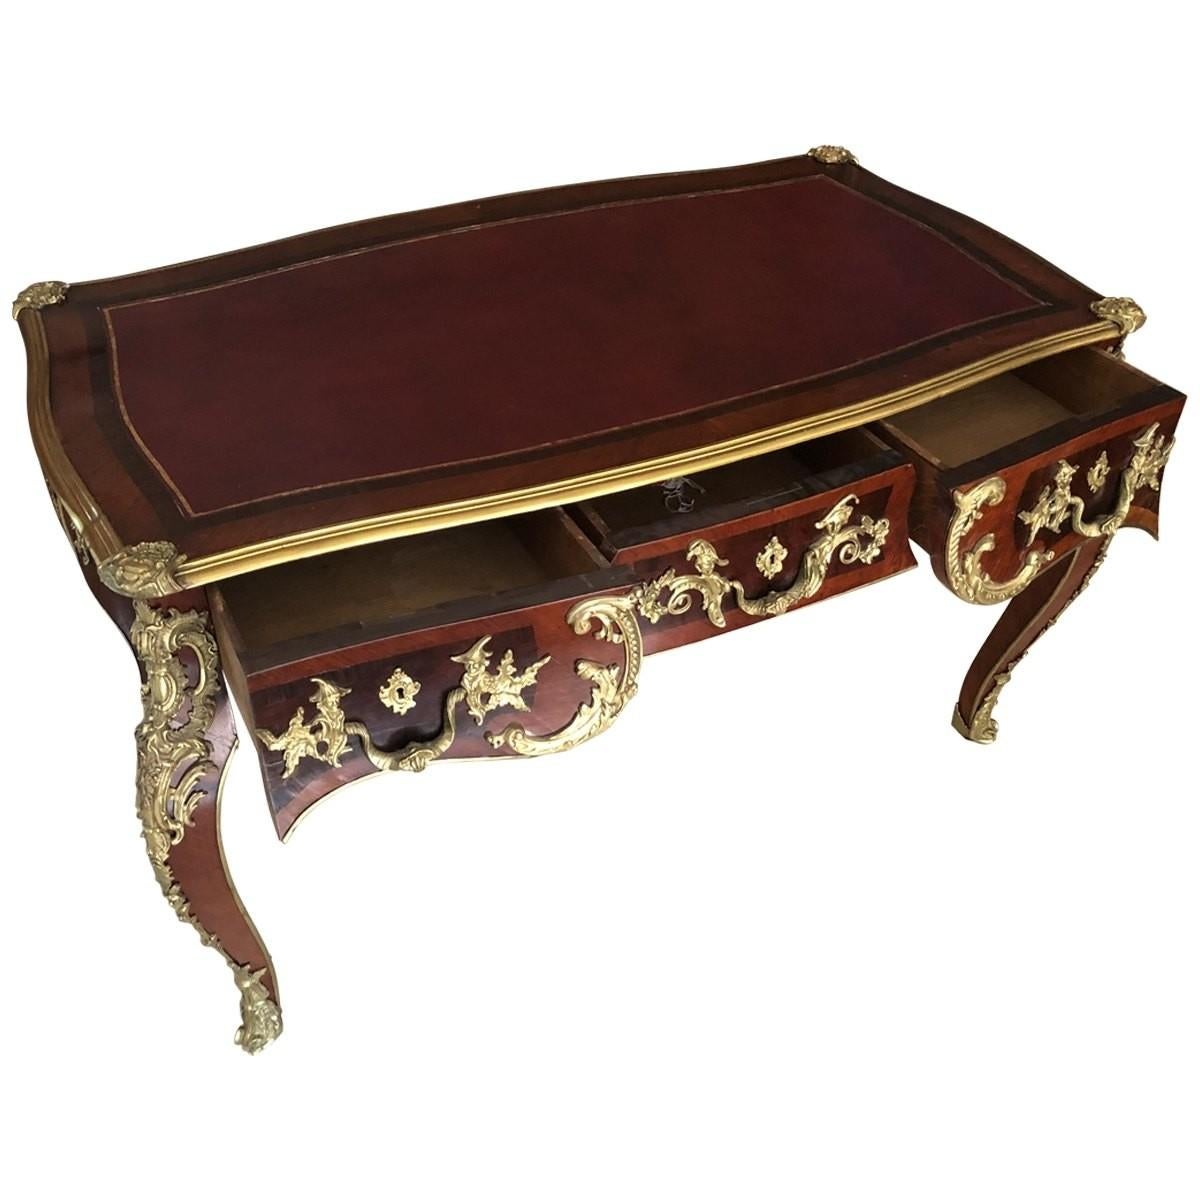 Opulenter Schreibtisch aus dem 19. Jahrhundert. Vergoldete Bronzebeschläge und Intarsien schmücken den Schreibtisch und verleihen ihm einen Hauch von altem Stil. Mit Cabriole-Beinen, drei Schubladen und einer Platte mit burgunderrotem